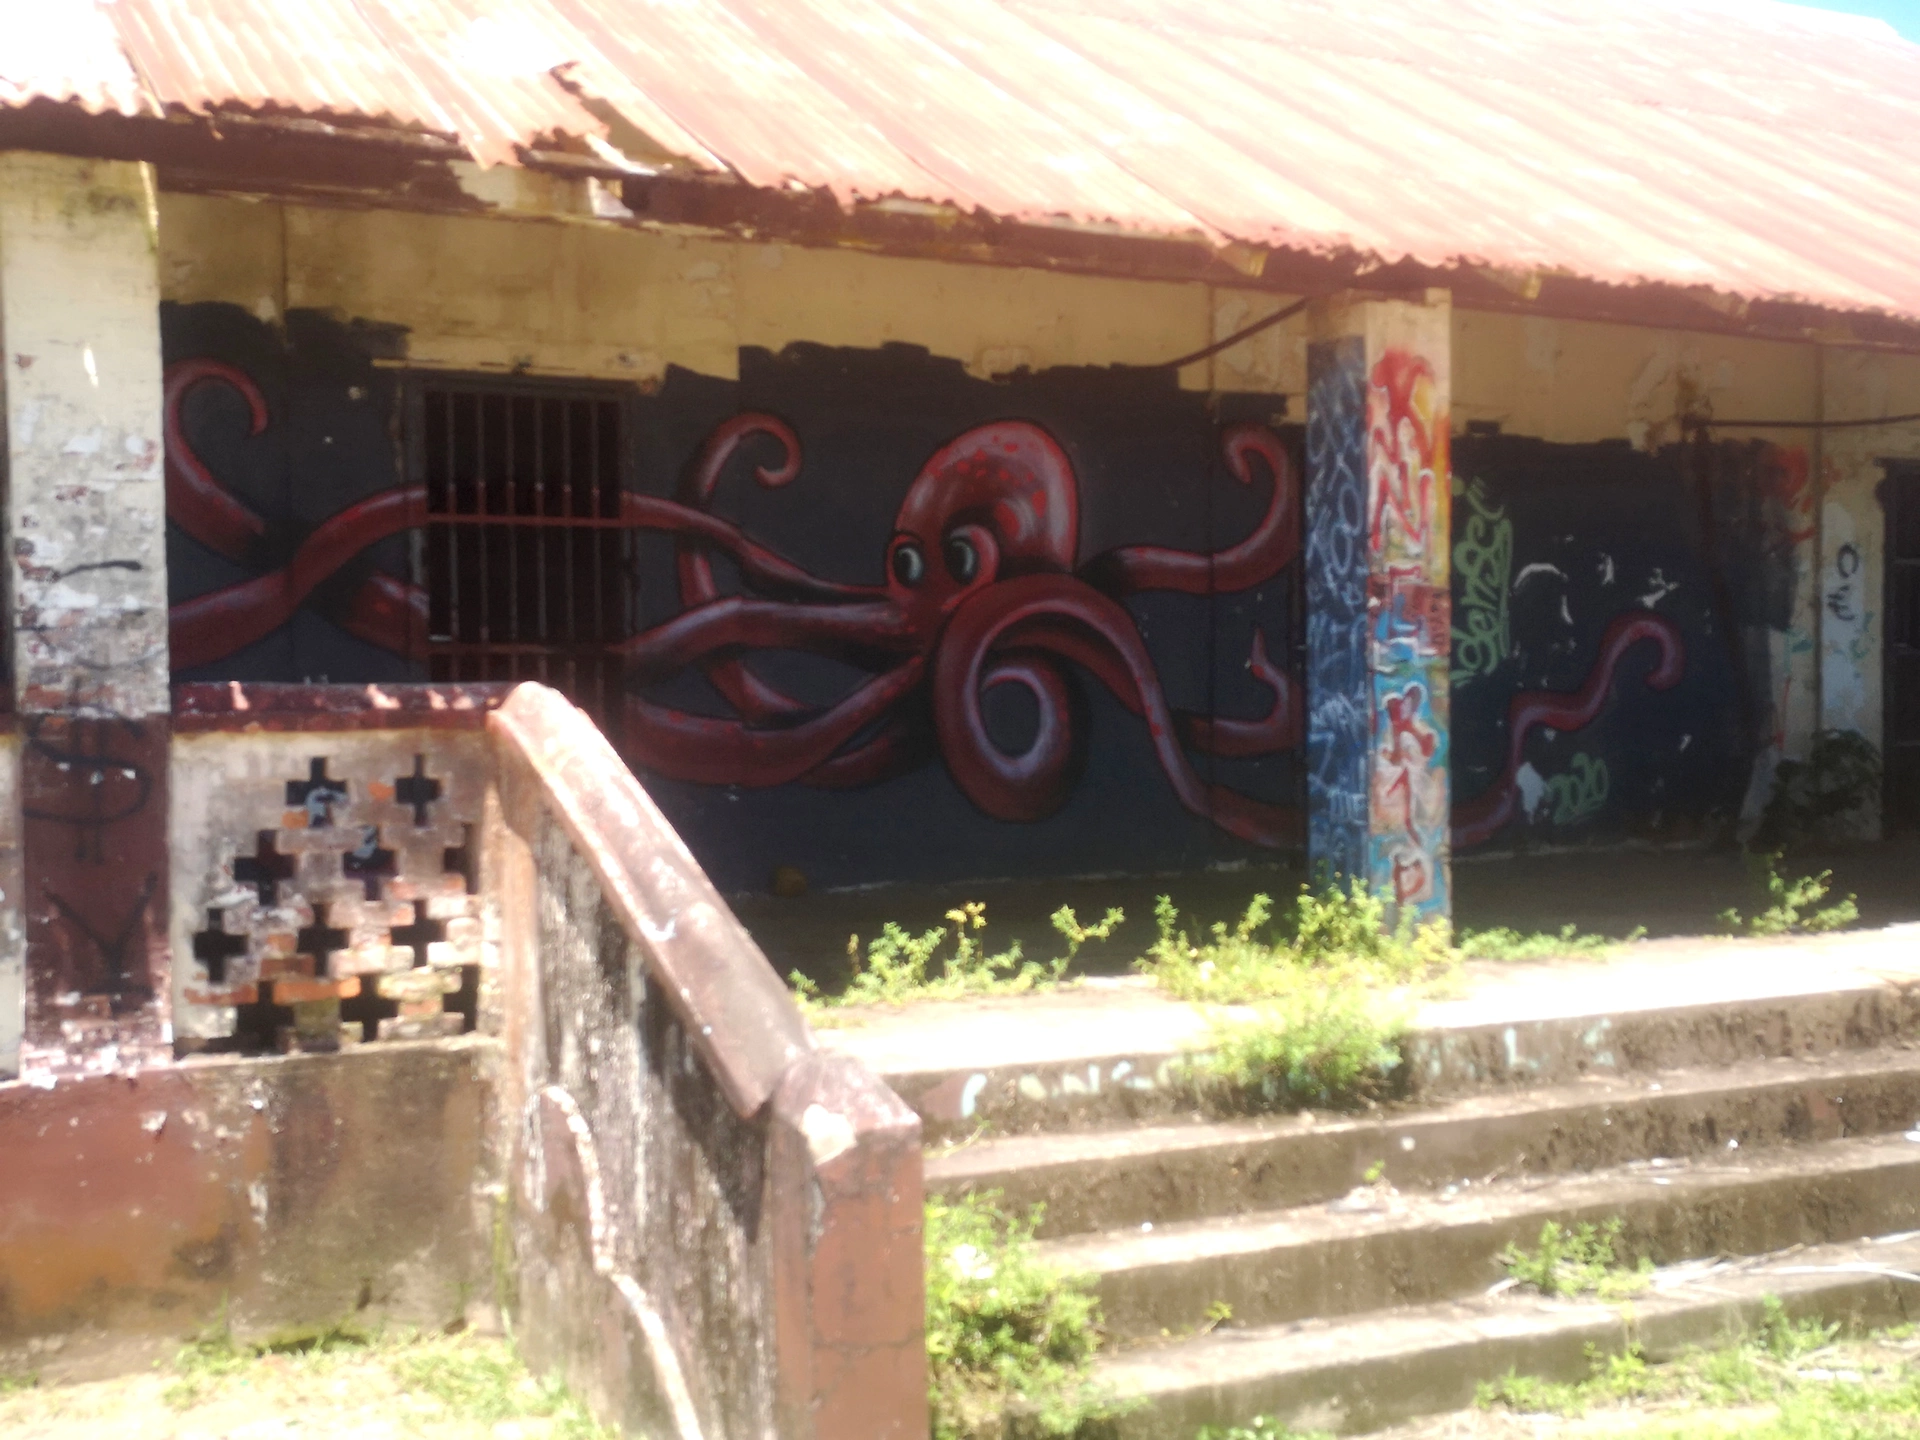 Oeuvre de Street Art réalisée par Sensei à Awala-Yalimapo